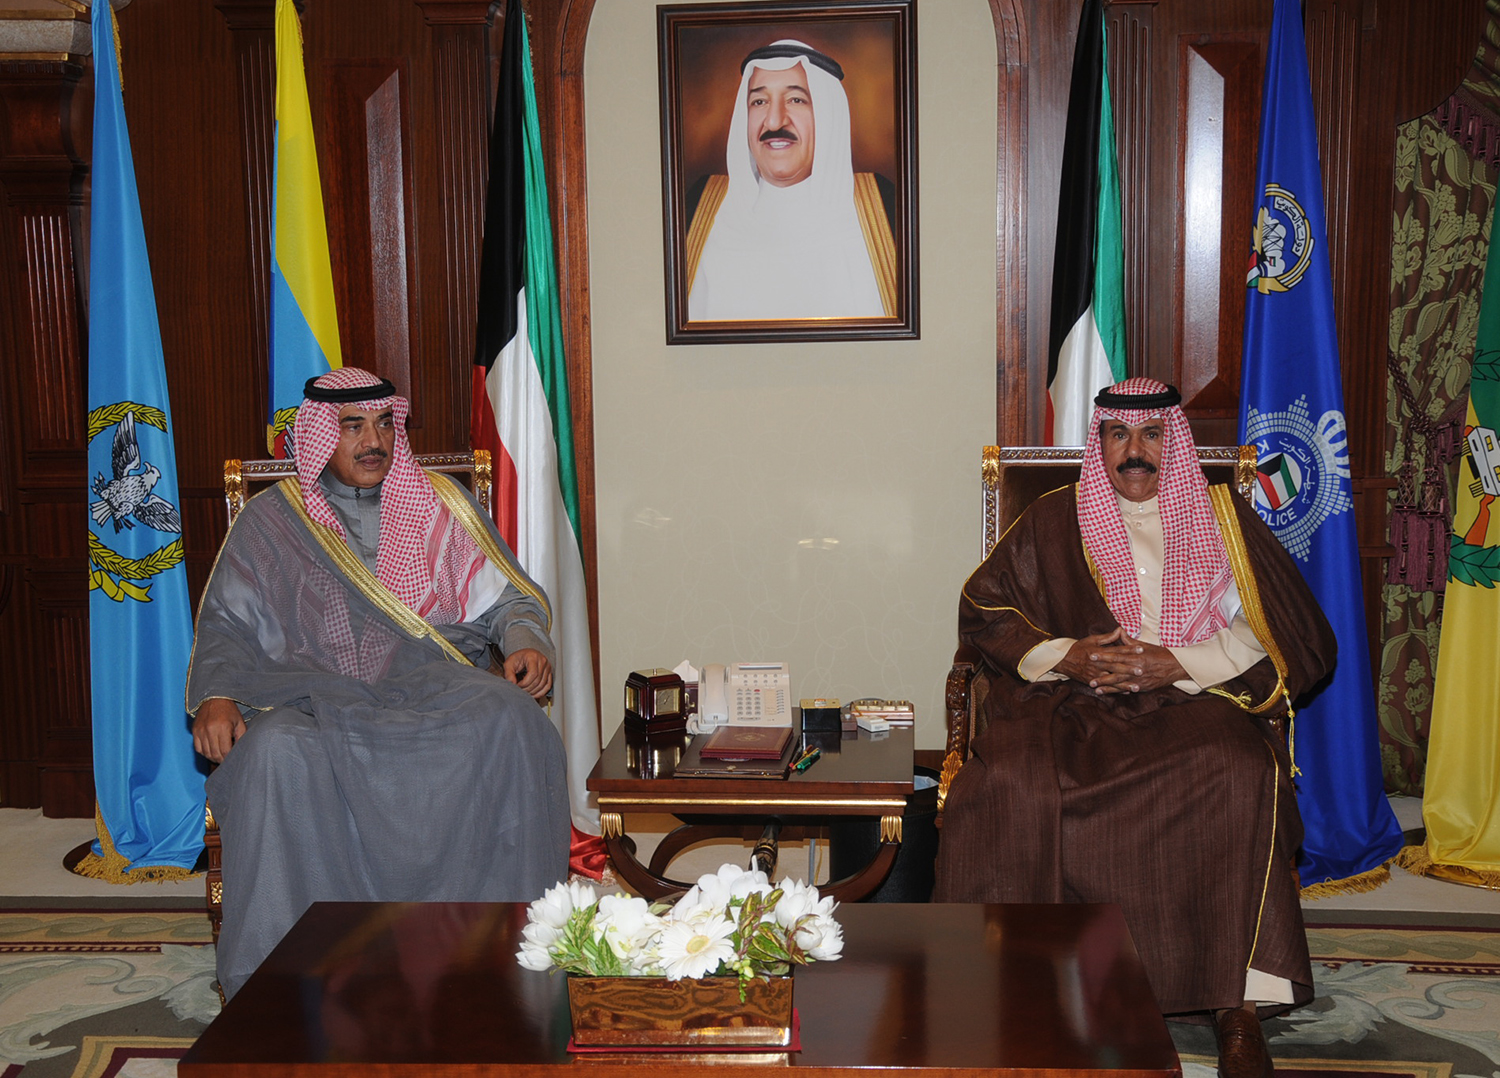 His Highness the Crown Prince Sheikh Nawaf Al-Ahmad Al-Jaber Al-Sabah receives First Deputy Prime Minister and Foreign Minister Sheikh Sabah Khaled Al-Hamad Al-Sabah